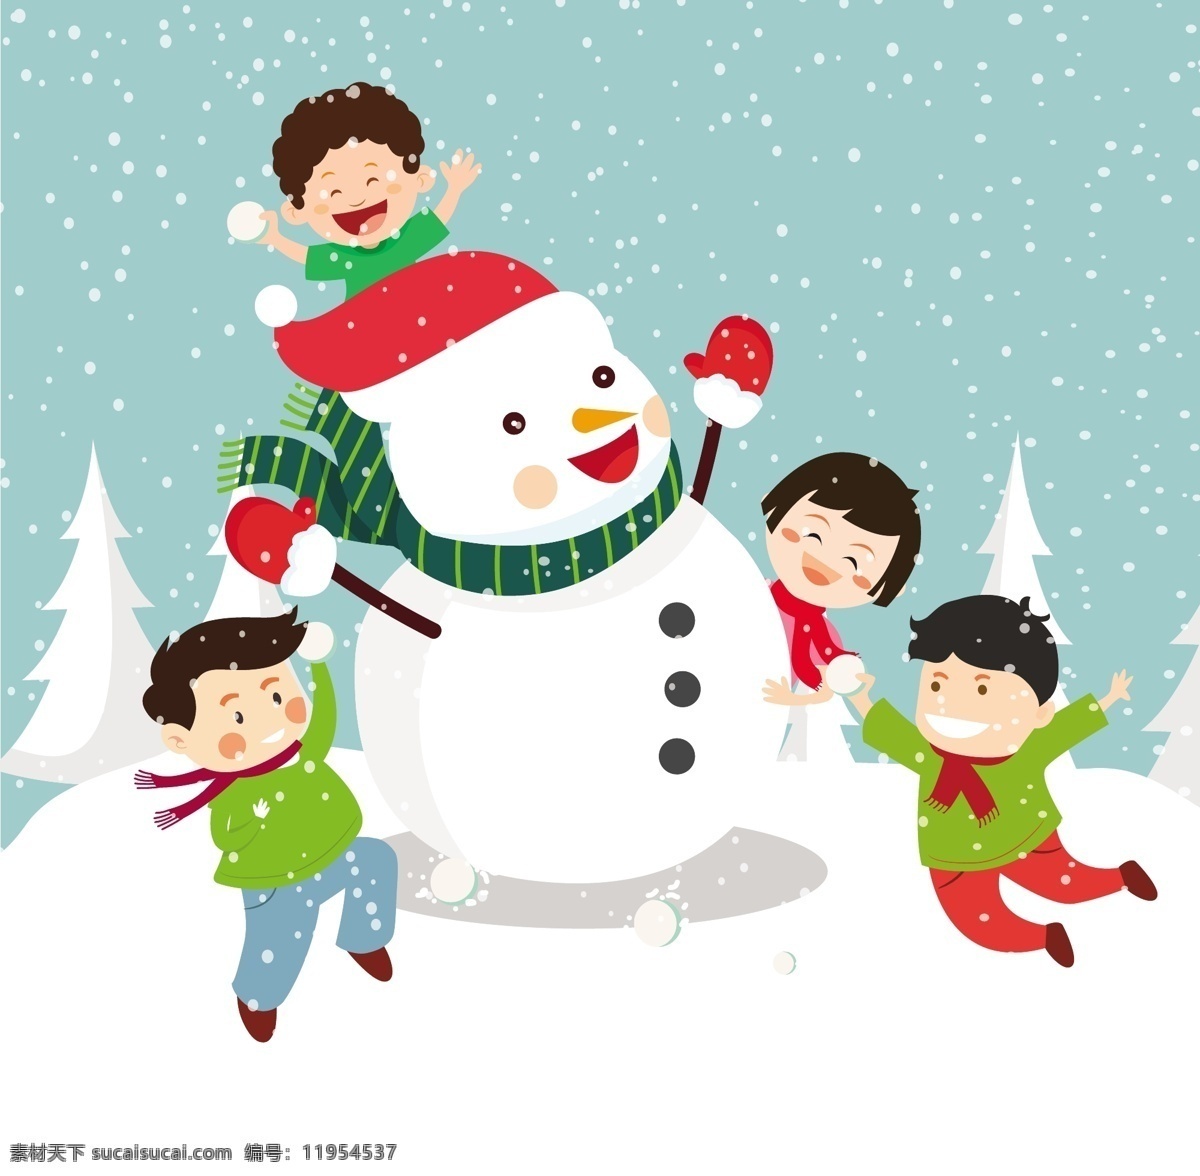 圣诞 背景 快乐 孩子 雪人 自由 向量 圣诞背景 儿童 圣诞快乐 雪地 矢量图